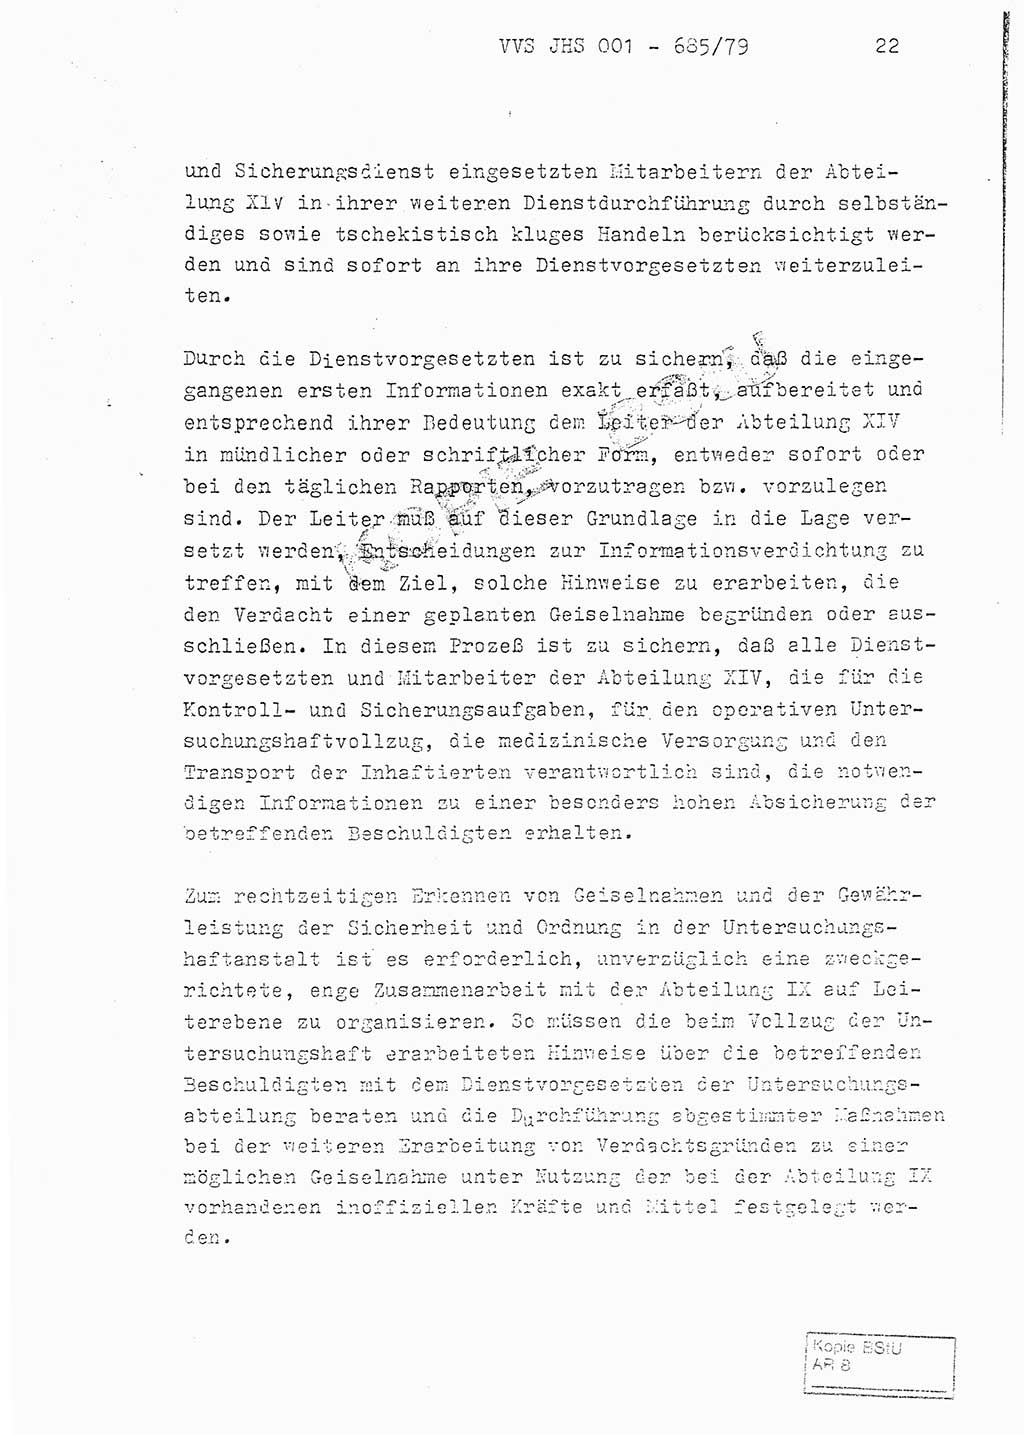 Fachschulabschlußarbeit Oberleutnant Helmut Peckruhn (BV Bln. Abt. ⅩⅣ), Ministerium für Staatssicherheit (MfS) [Deutsche Demokratische Republik (DDR)], Juristische Hochschule (JHS), Vertrauliche Verschlußsache (VVS) 001-685/79, Potsdam 1979, Seite 22 (FS-Abschl.-Arb. MfS DDR JHS VVS 001-685/79 1979, S. 22)